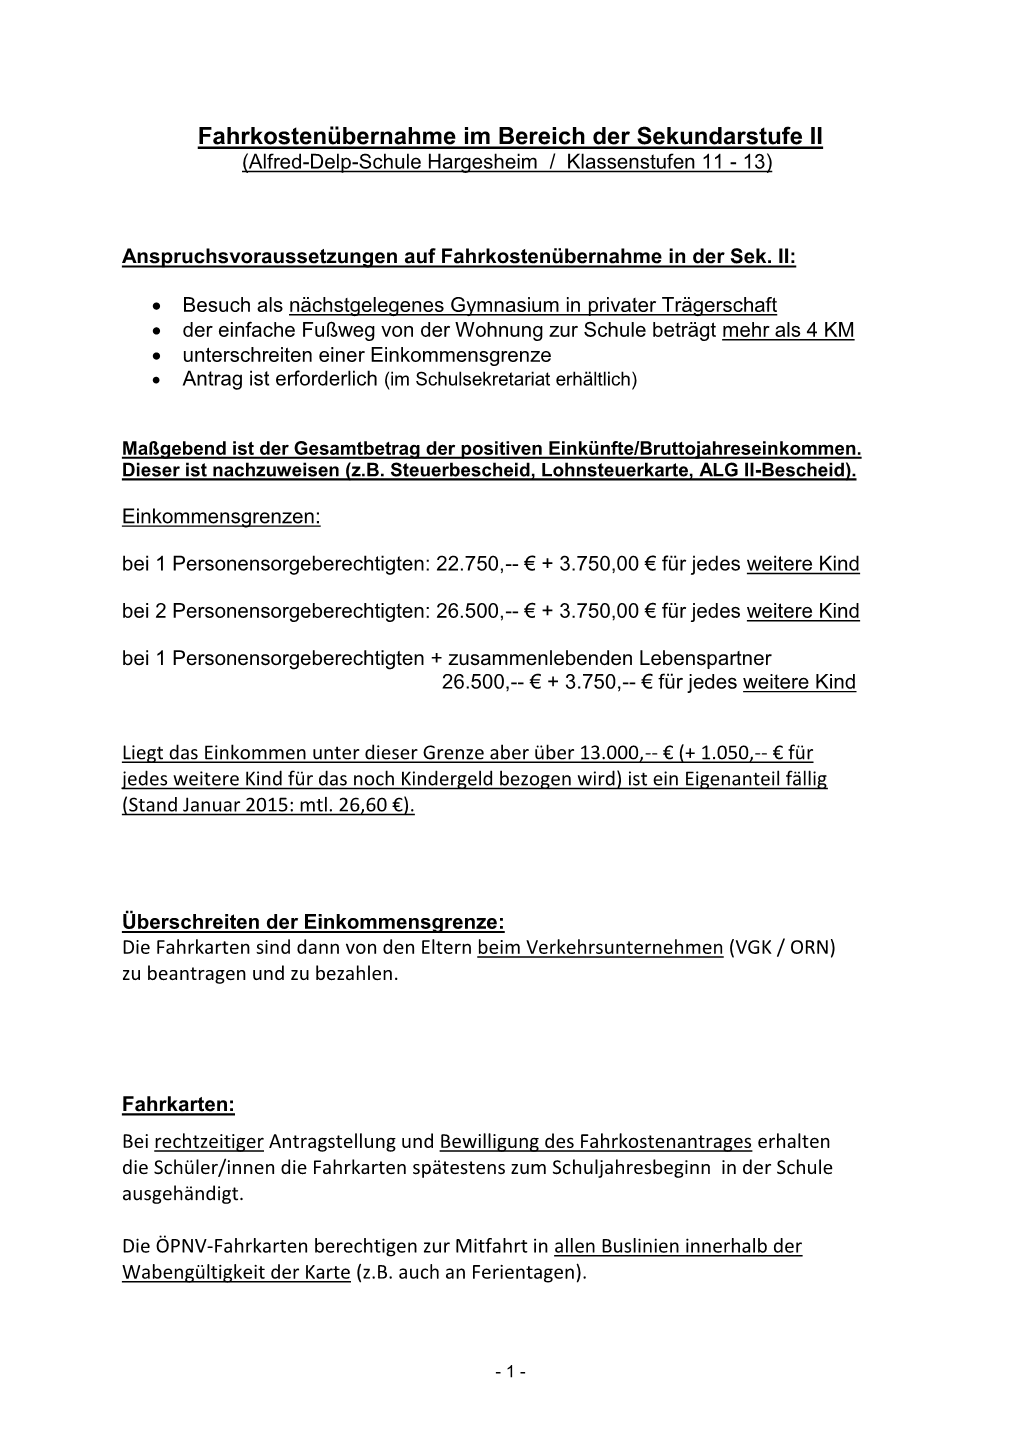 Alfred-Delp-Schule Hargesheim / Klassenstufen 11 - 13)